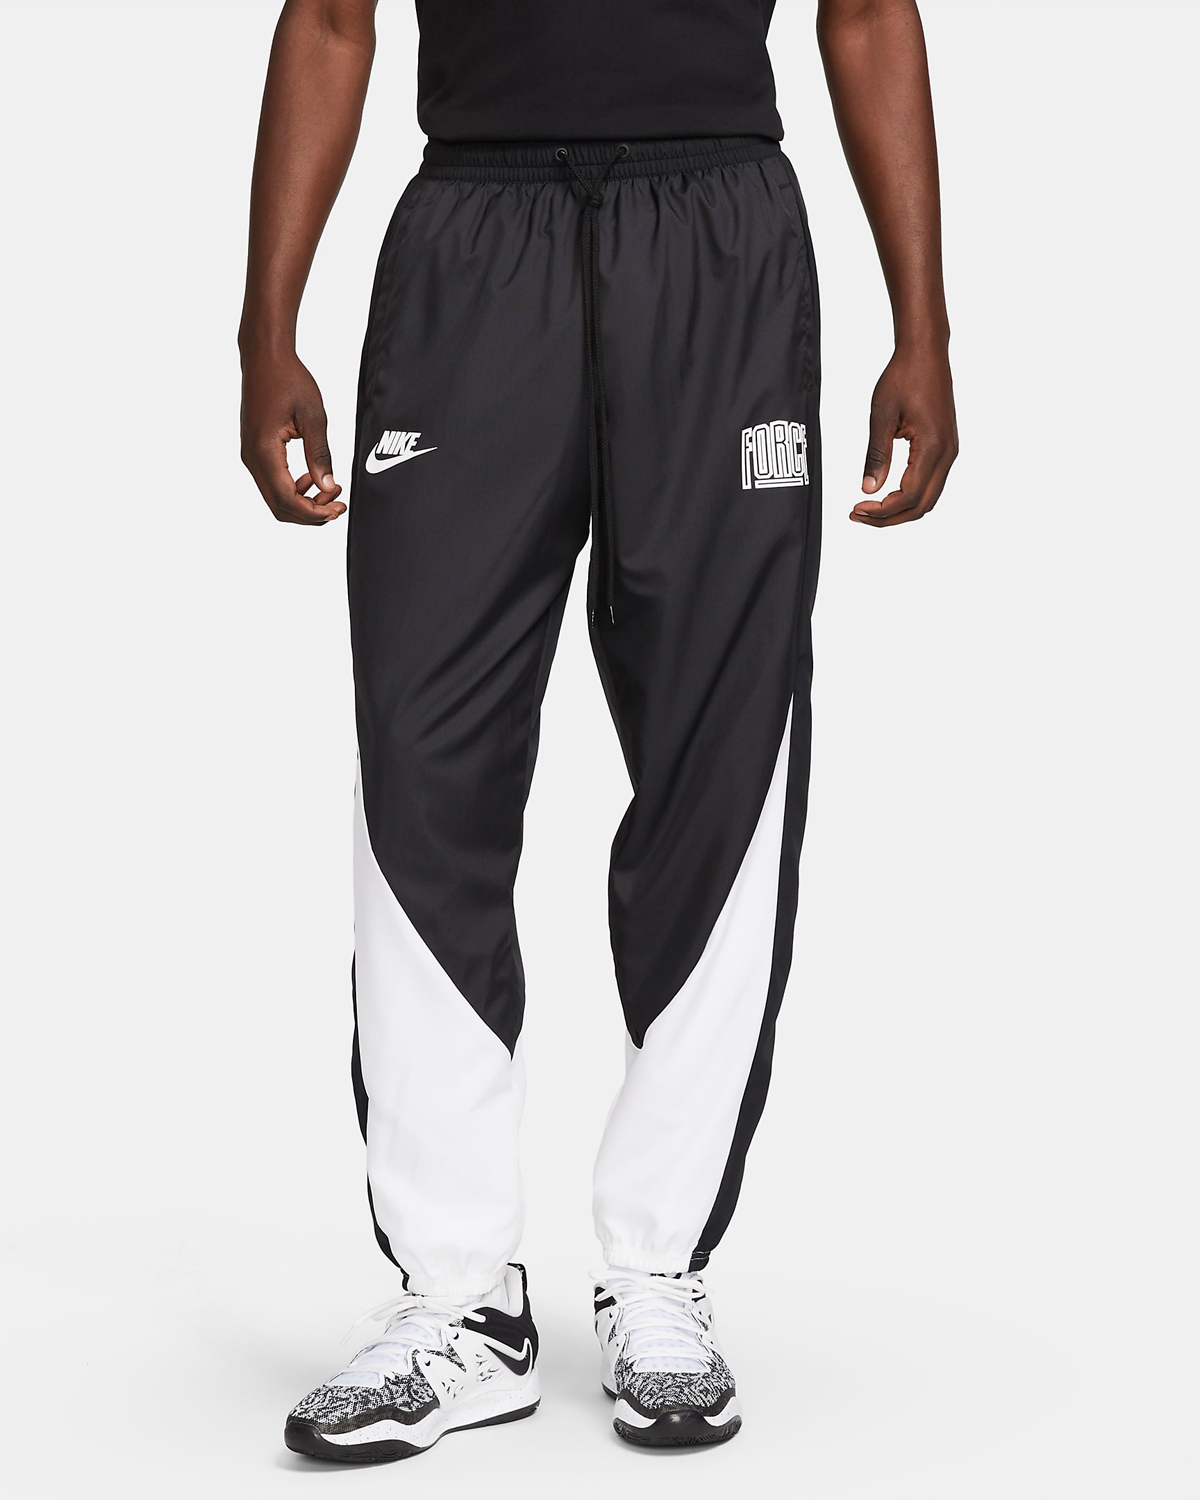 Nike-Starting-5-Basketball-Pants-Black-White